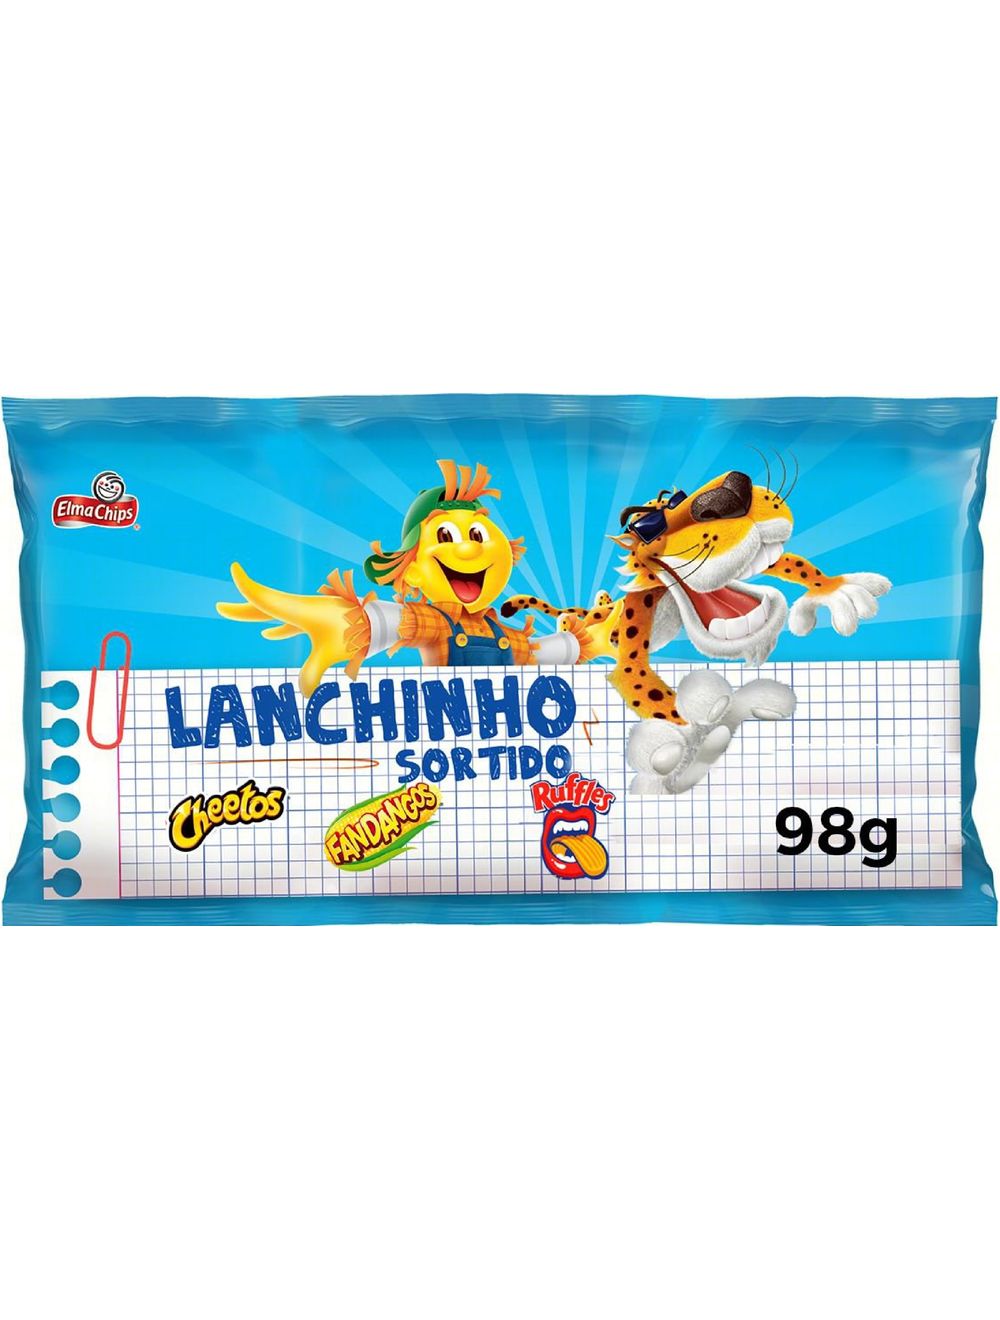 Kit Cheetos Onda Requeijão Elma Chips (45g x 10)